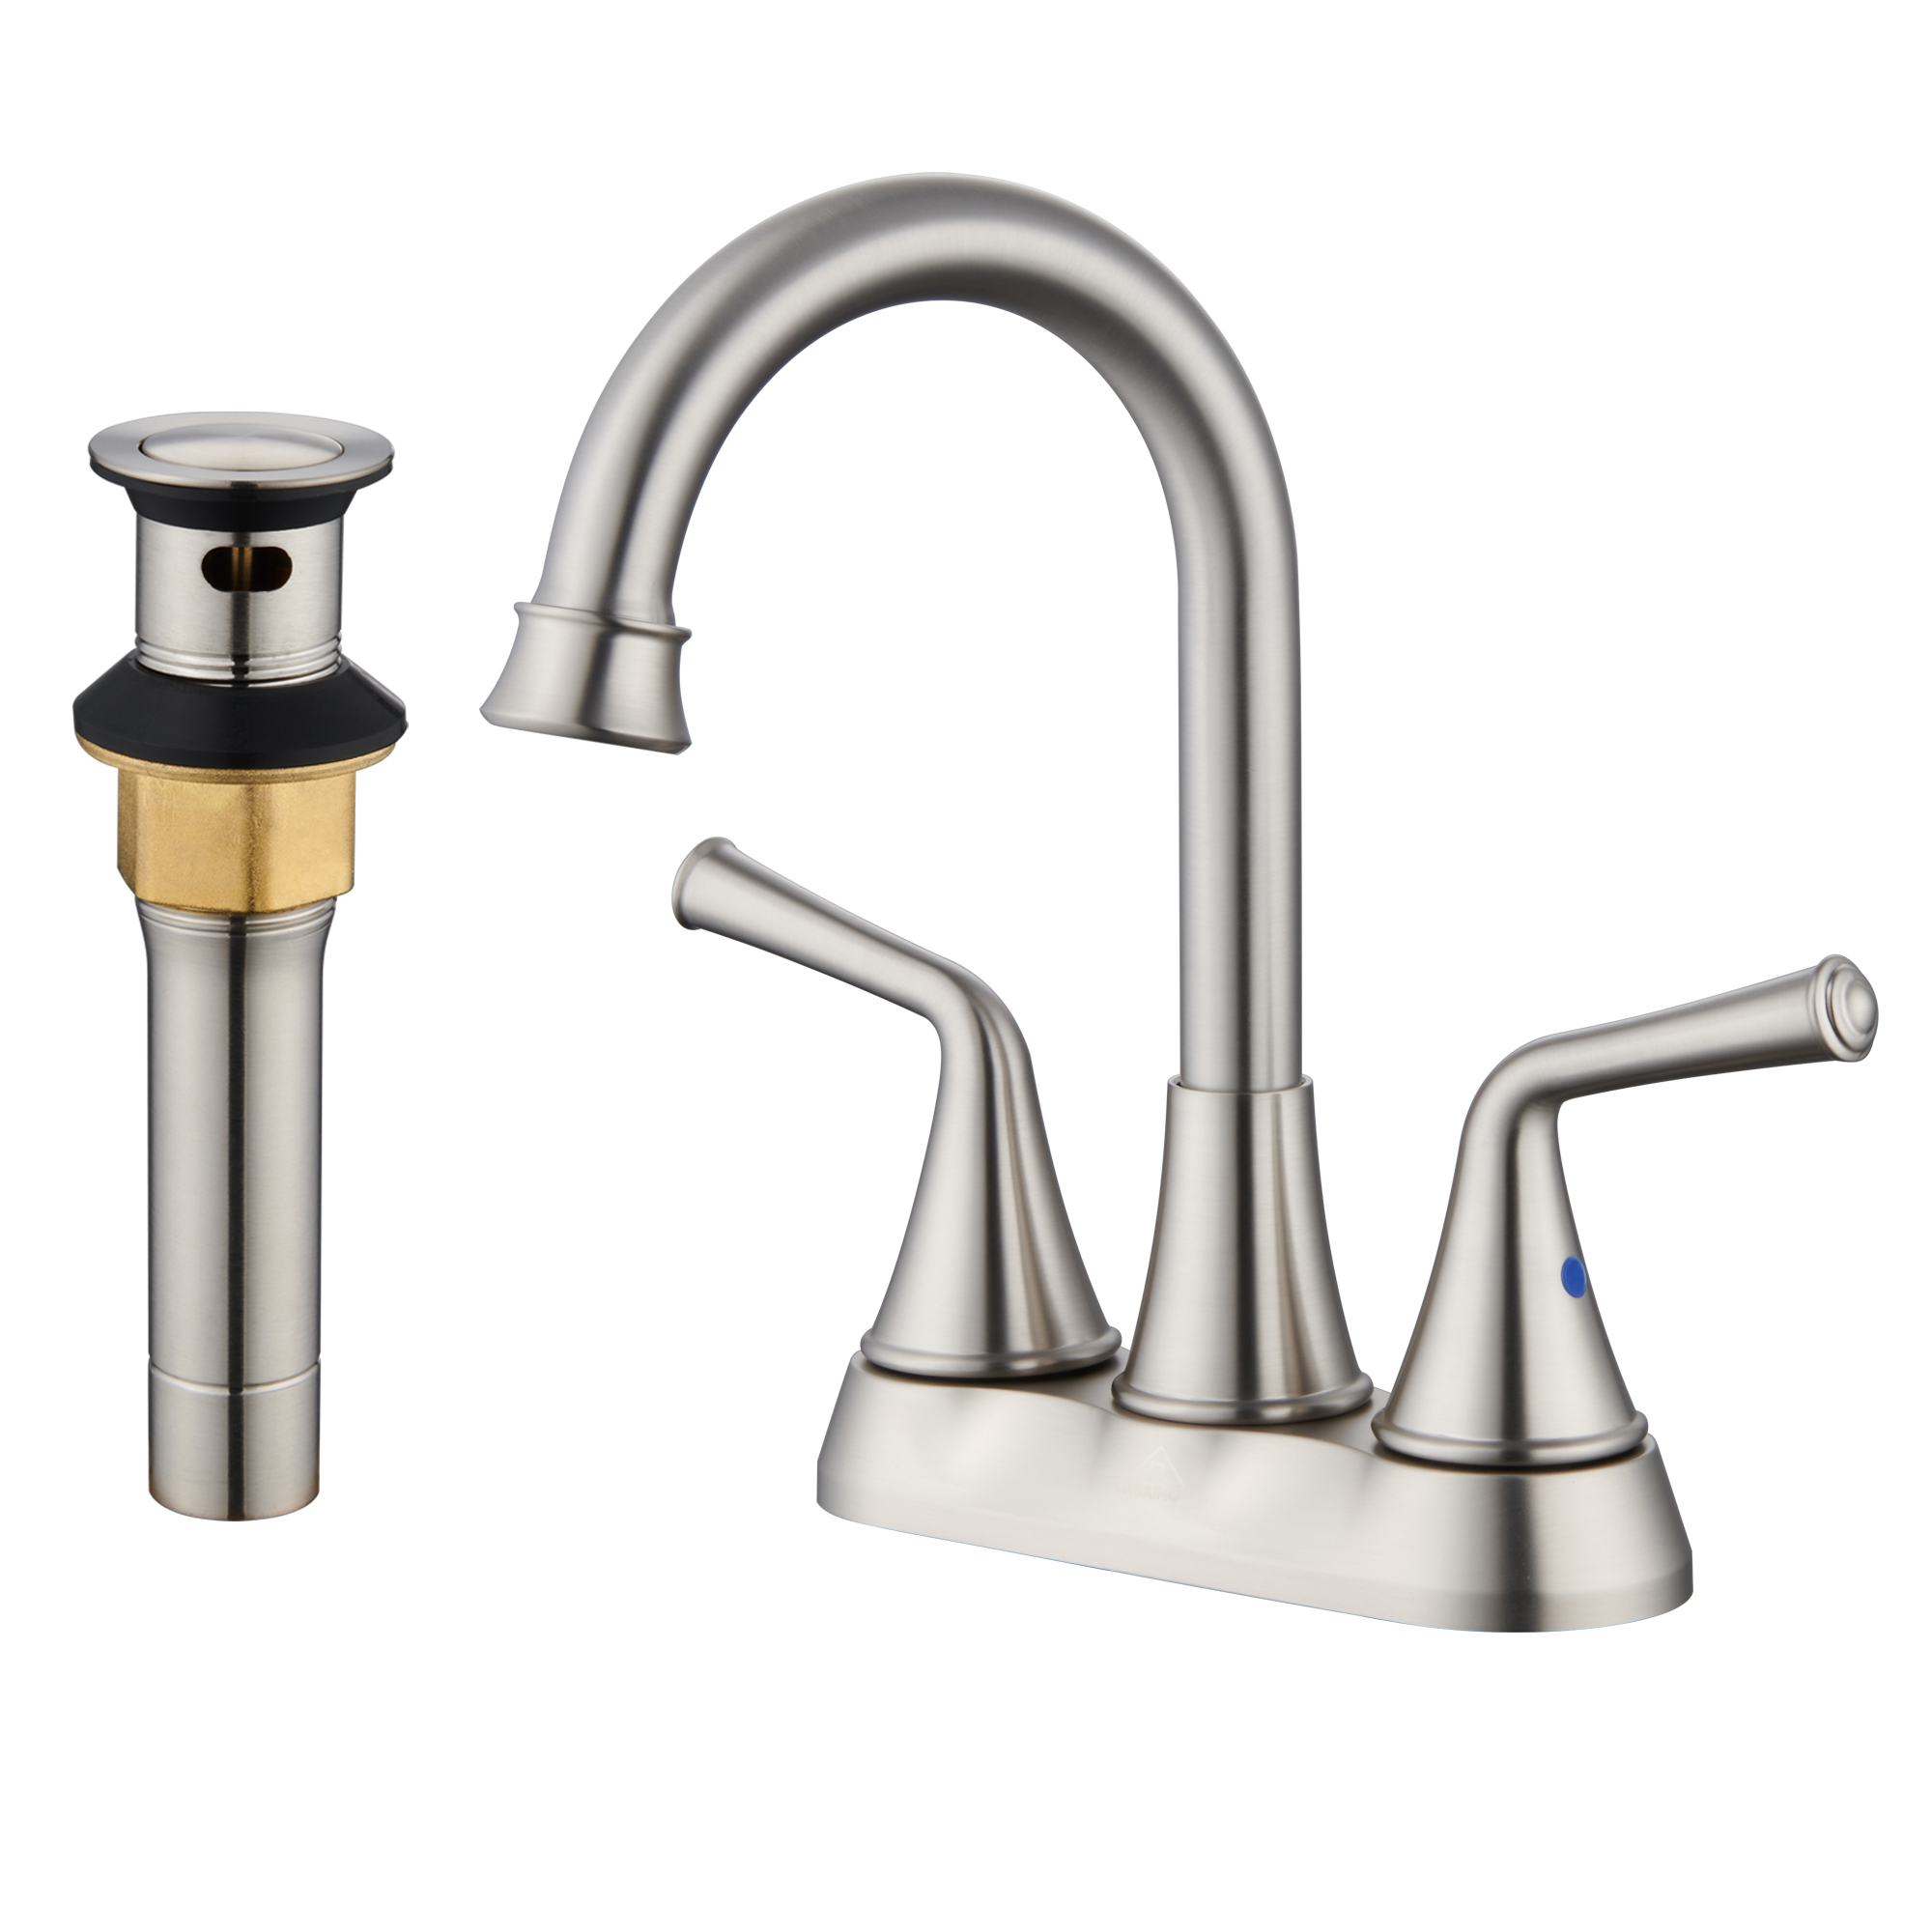 Casainc 4 Inch 2-Handle Centerset Bathroom Faucet for Bathroom Sink Vanity Faucet 360° Swivel Spout